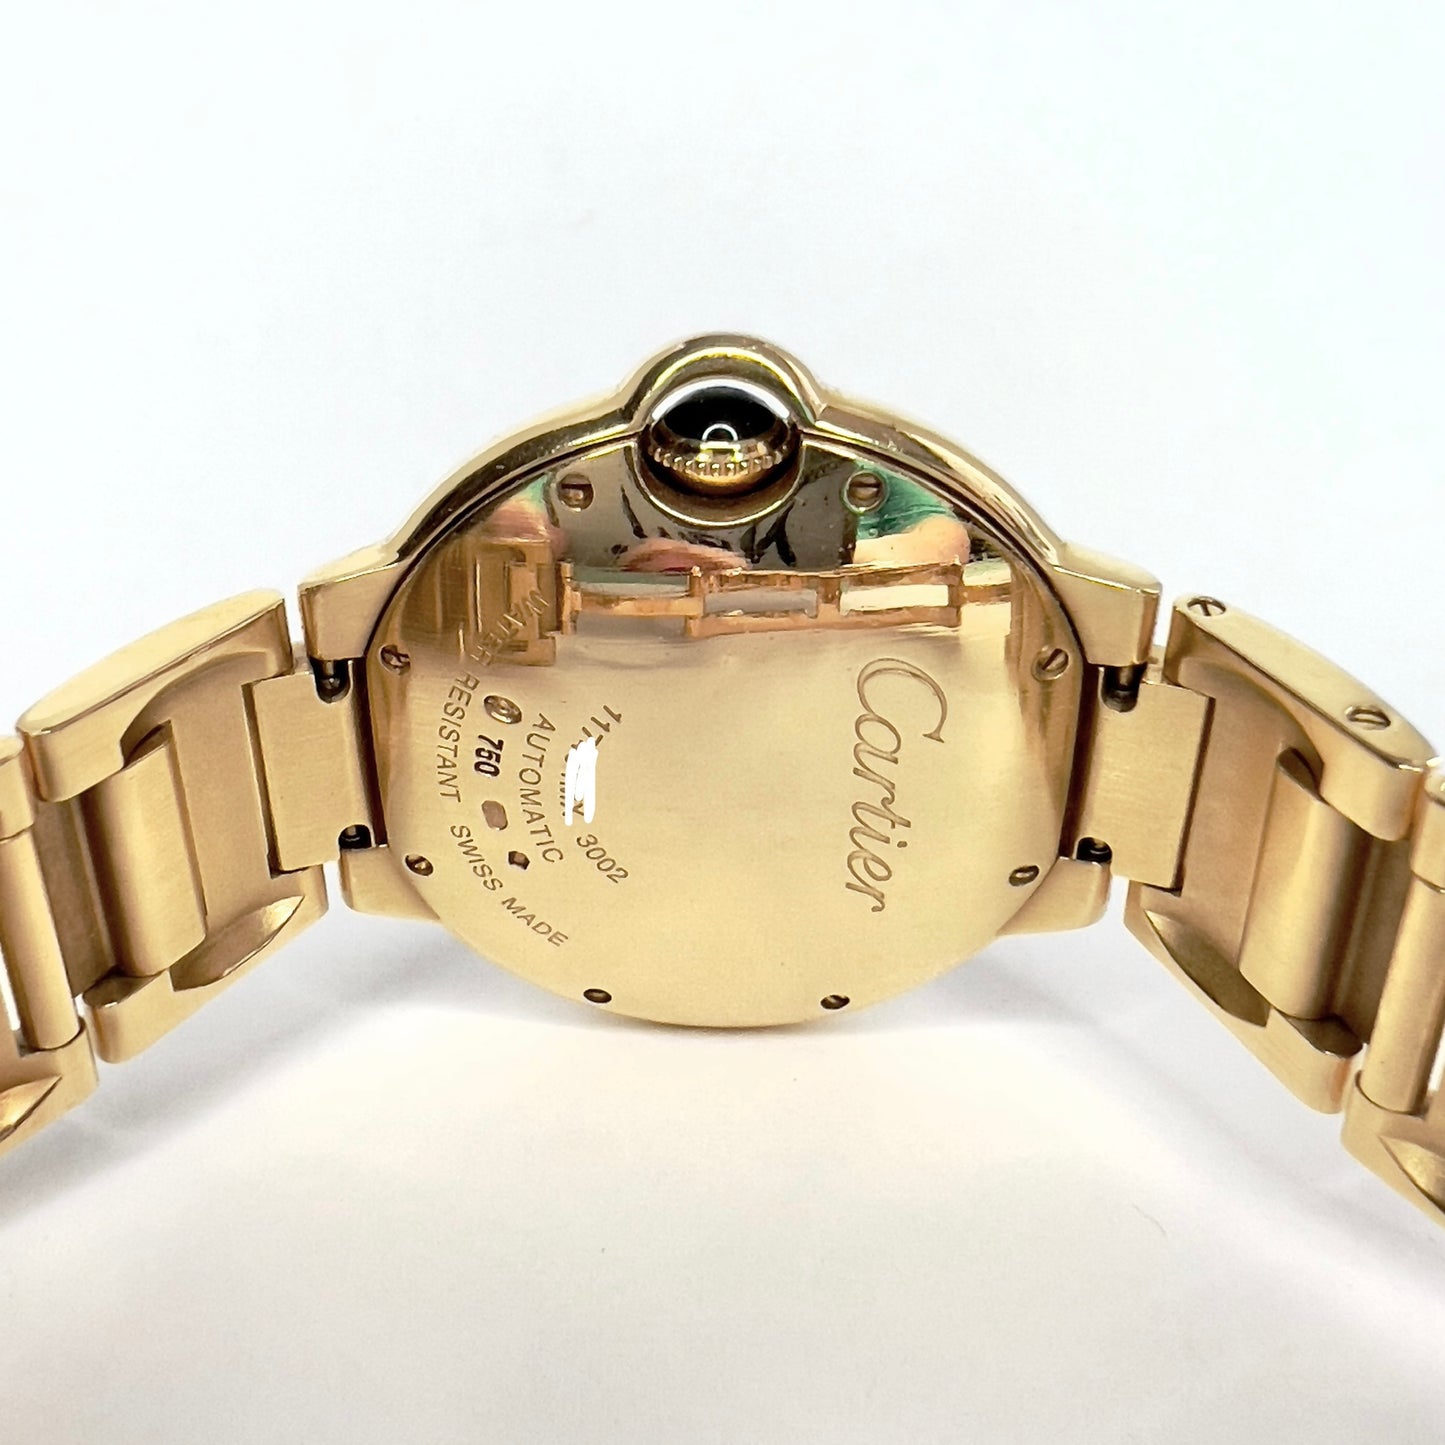 CARTIER BALLON BLEU 36mm Automatic 18K Yellow Gold Watch